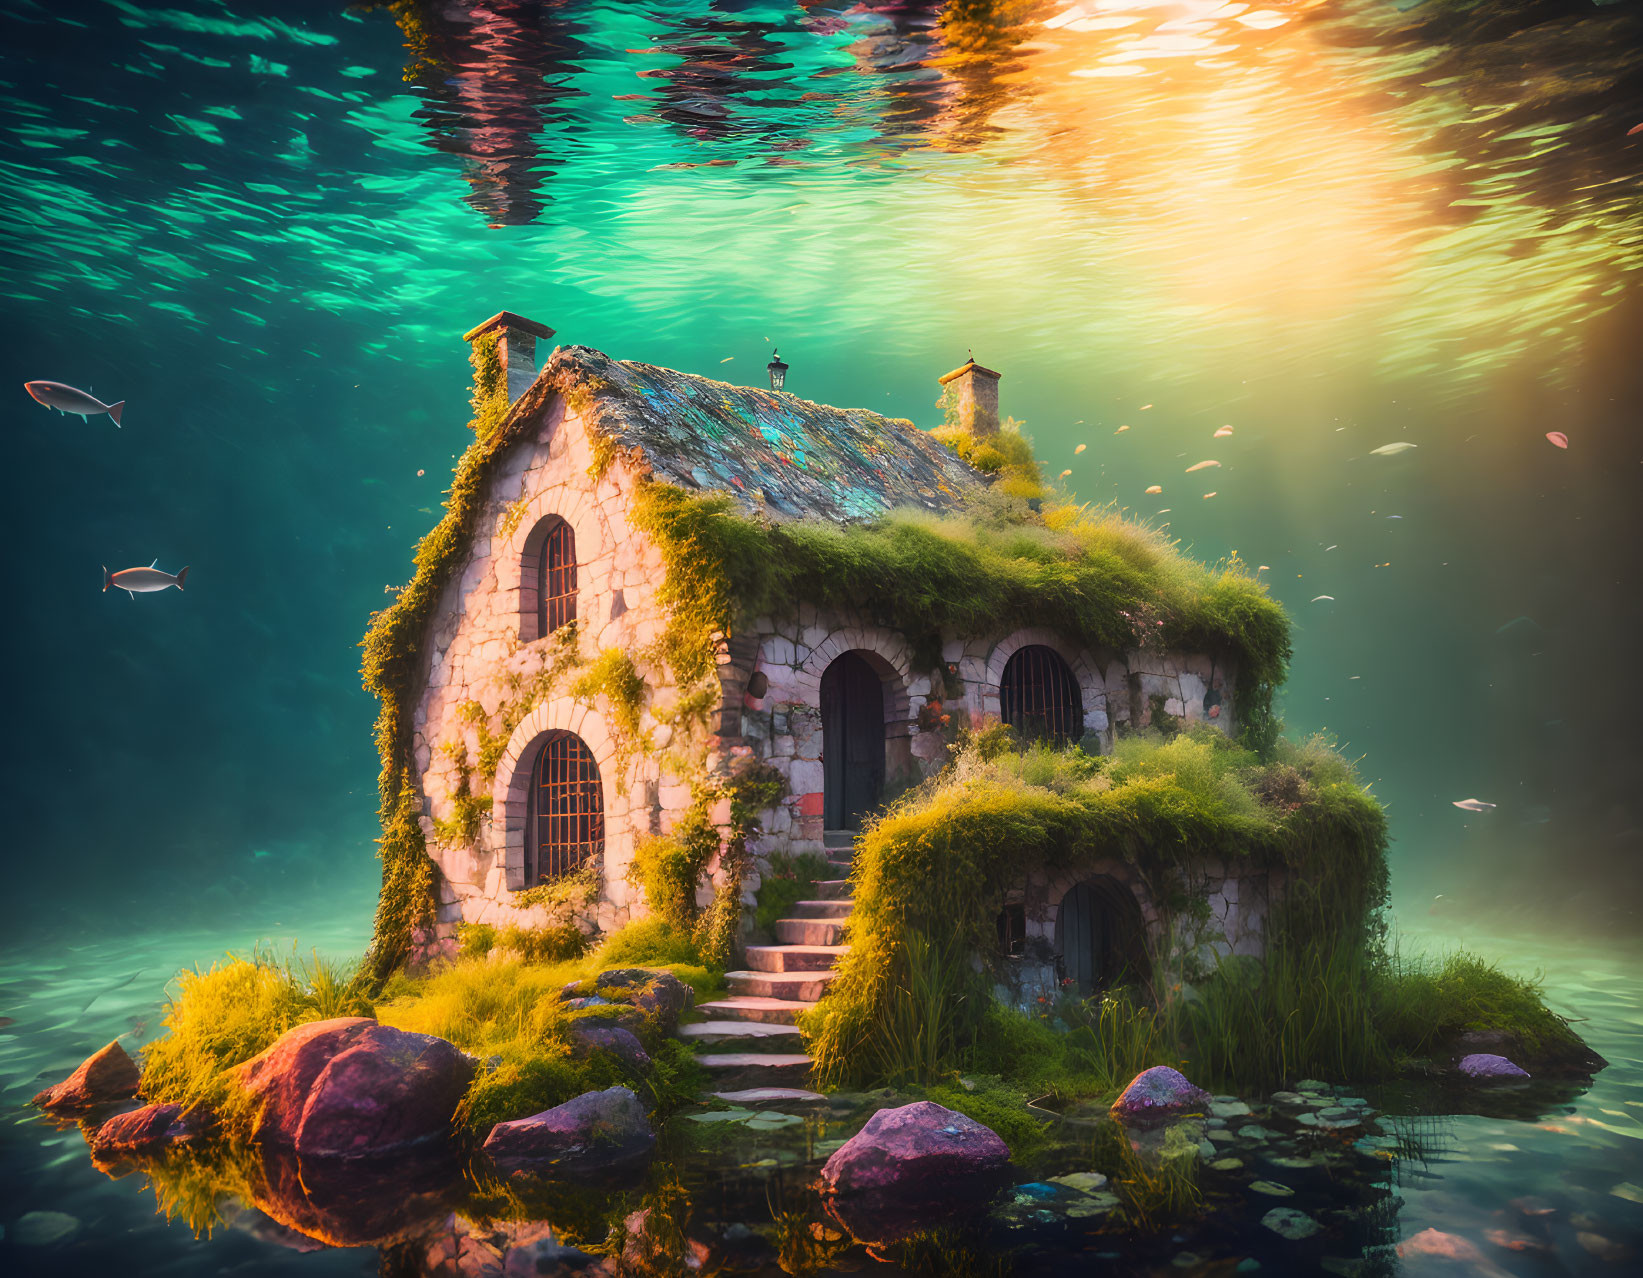 Underwater cottage